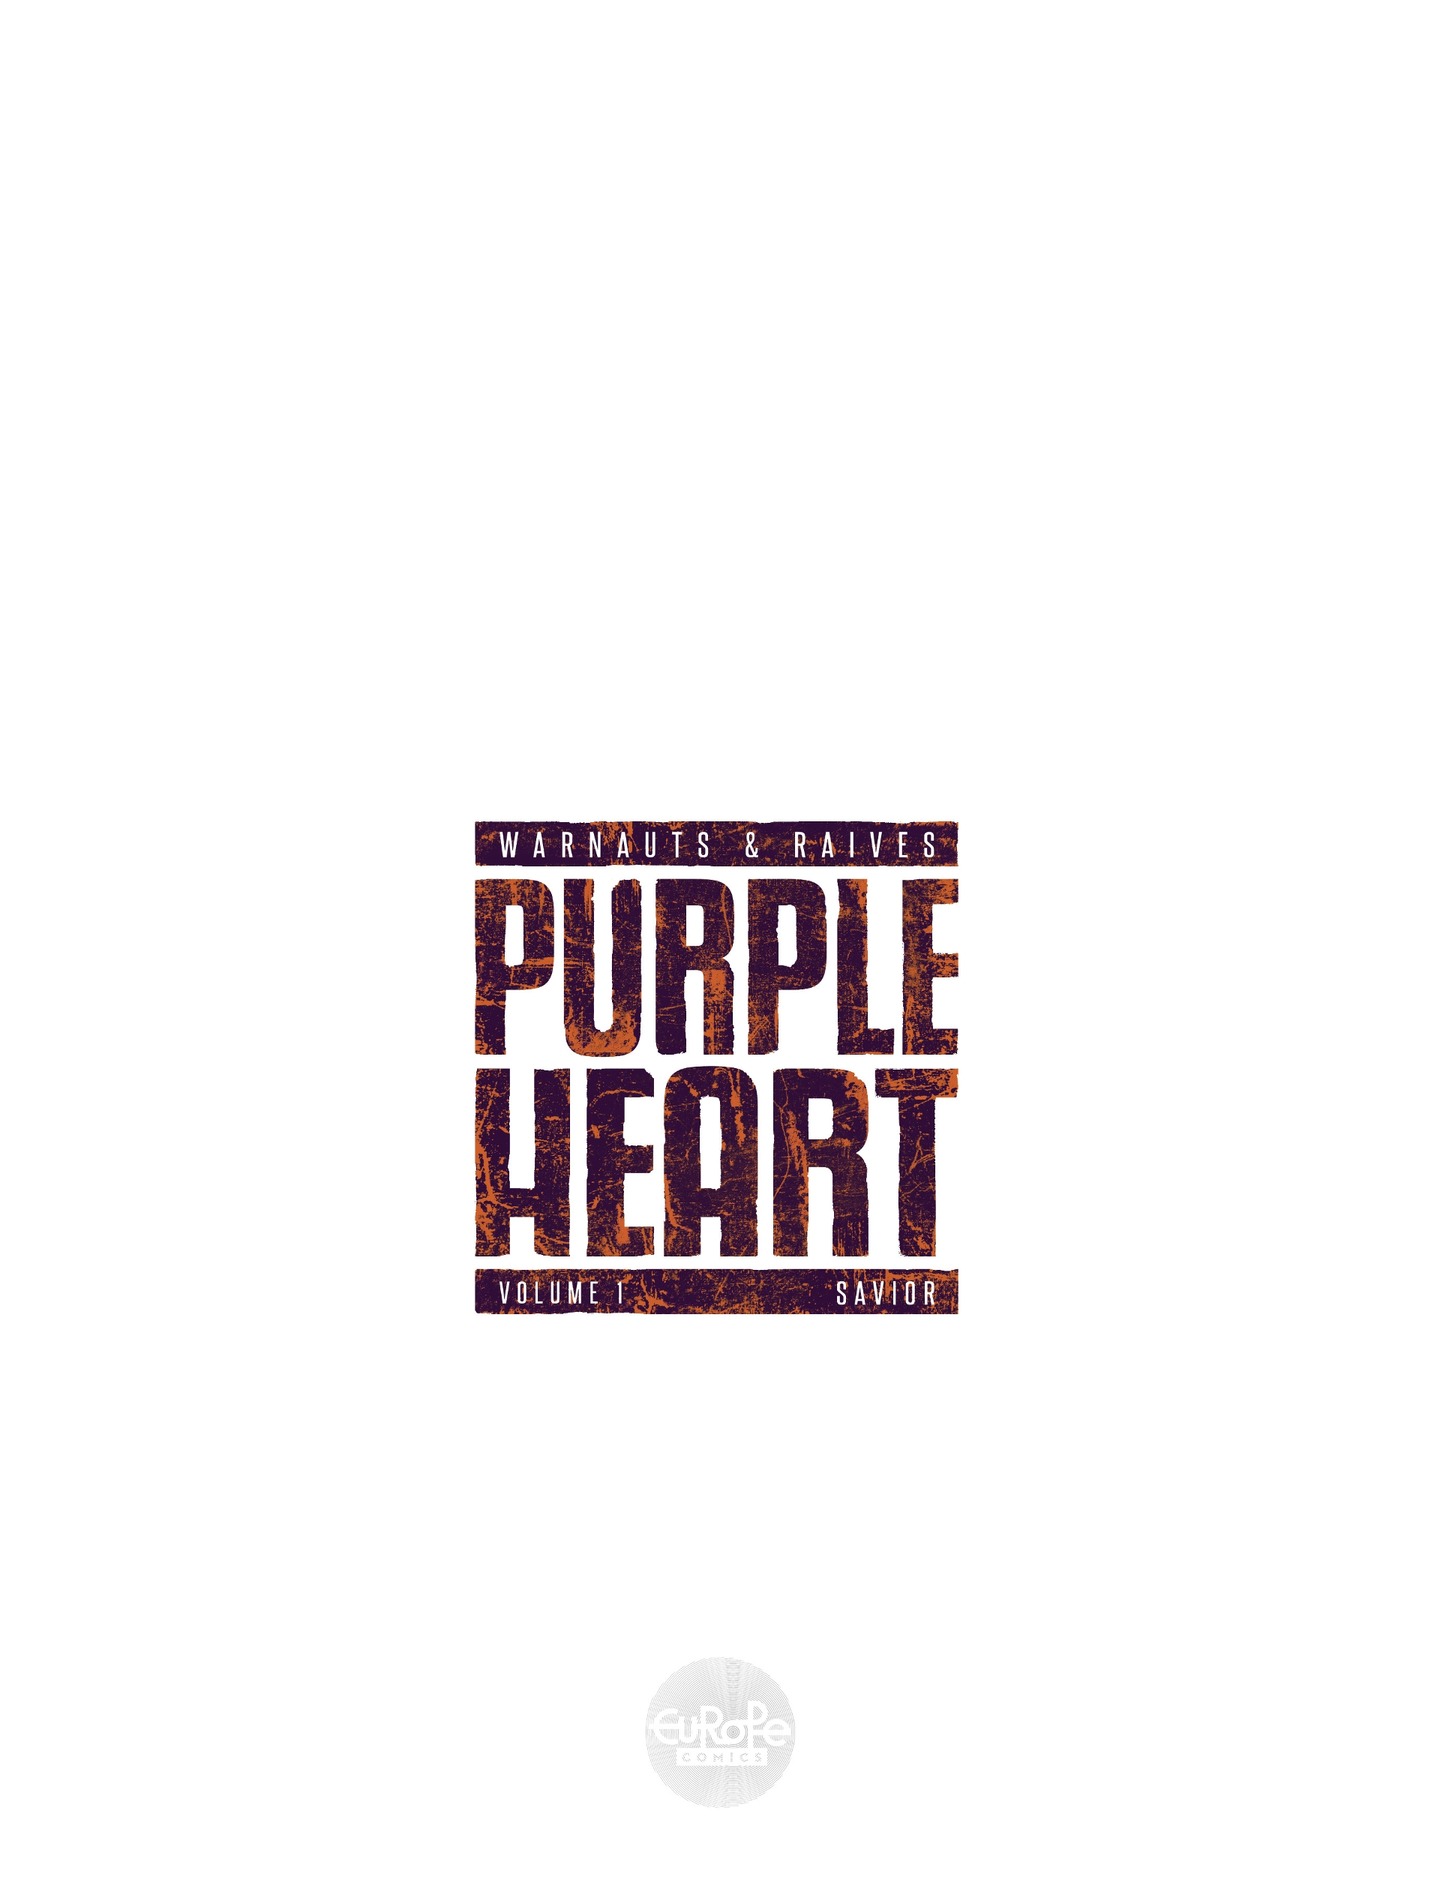 Read online Purple Heart comic -  Issue # TPB 1 - 3